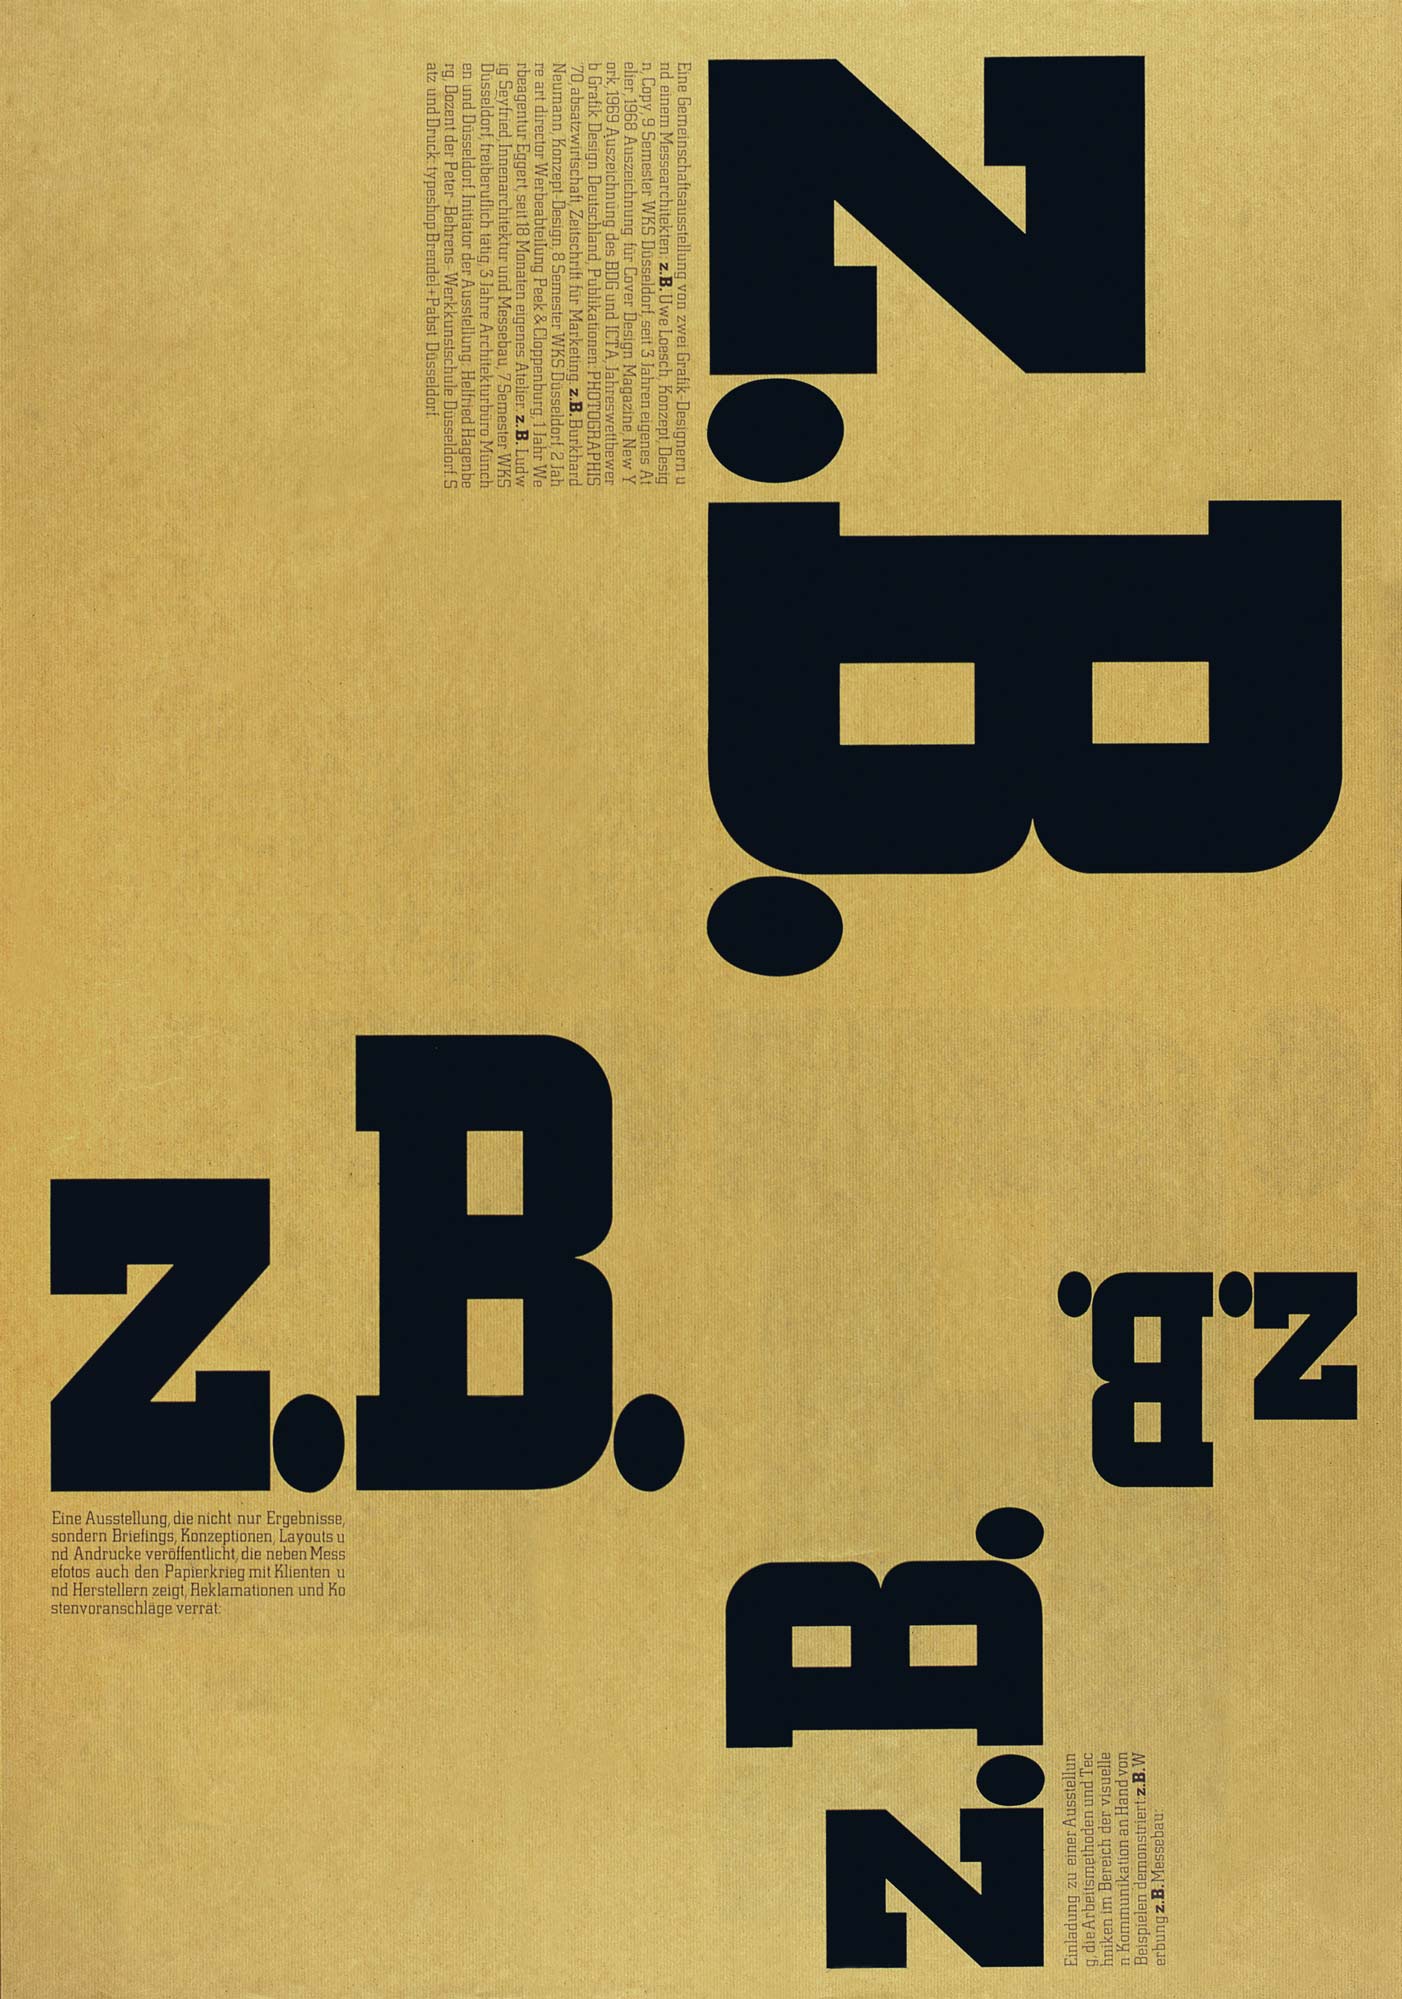 Gestaltet: Burkhard Neumann, Uwe Loesch, Titel: z.B., Jahr: 1971